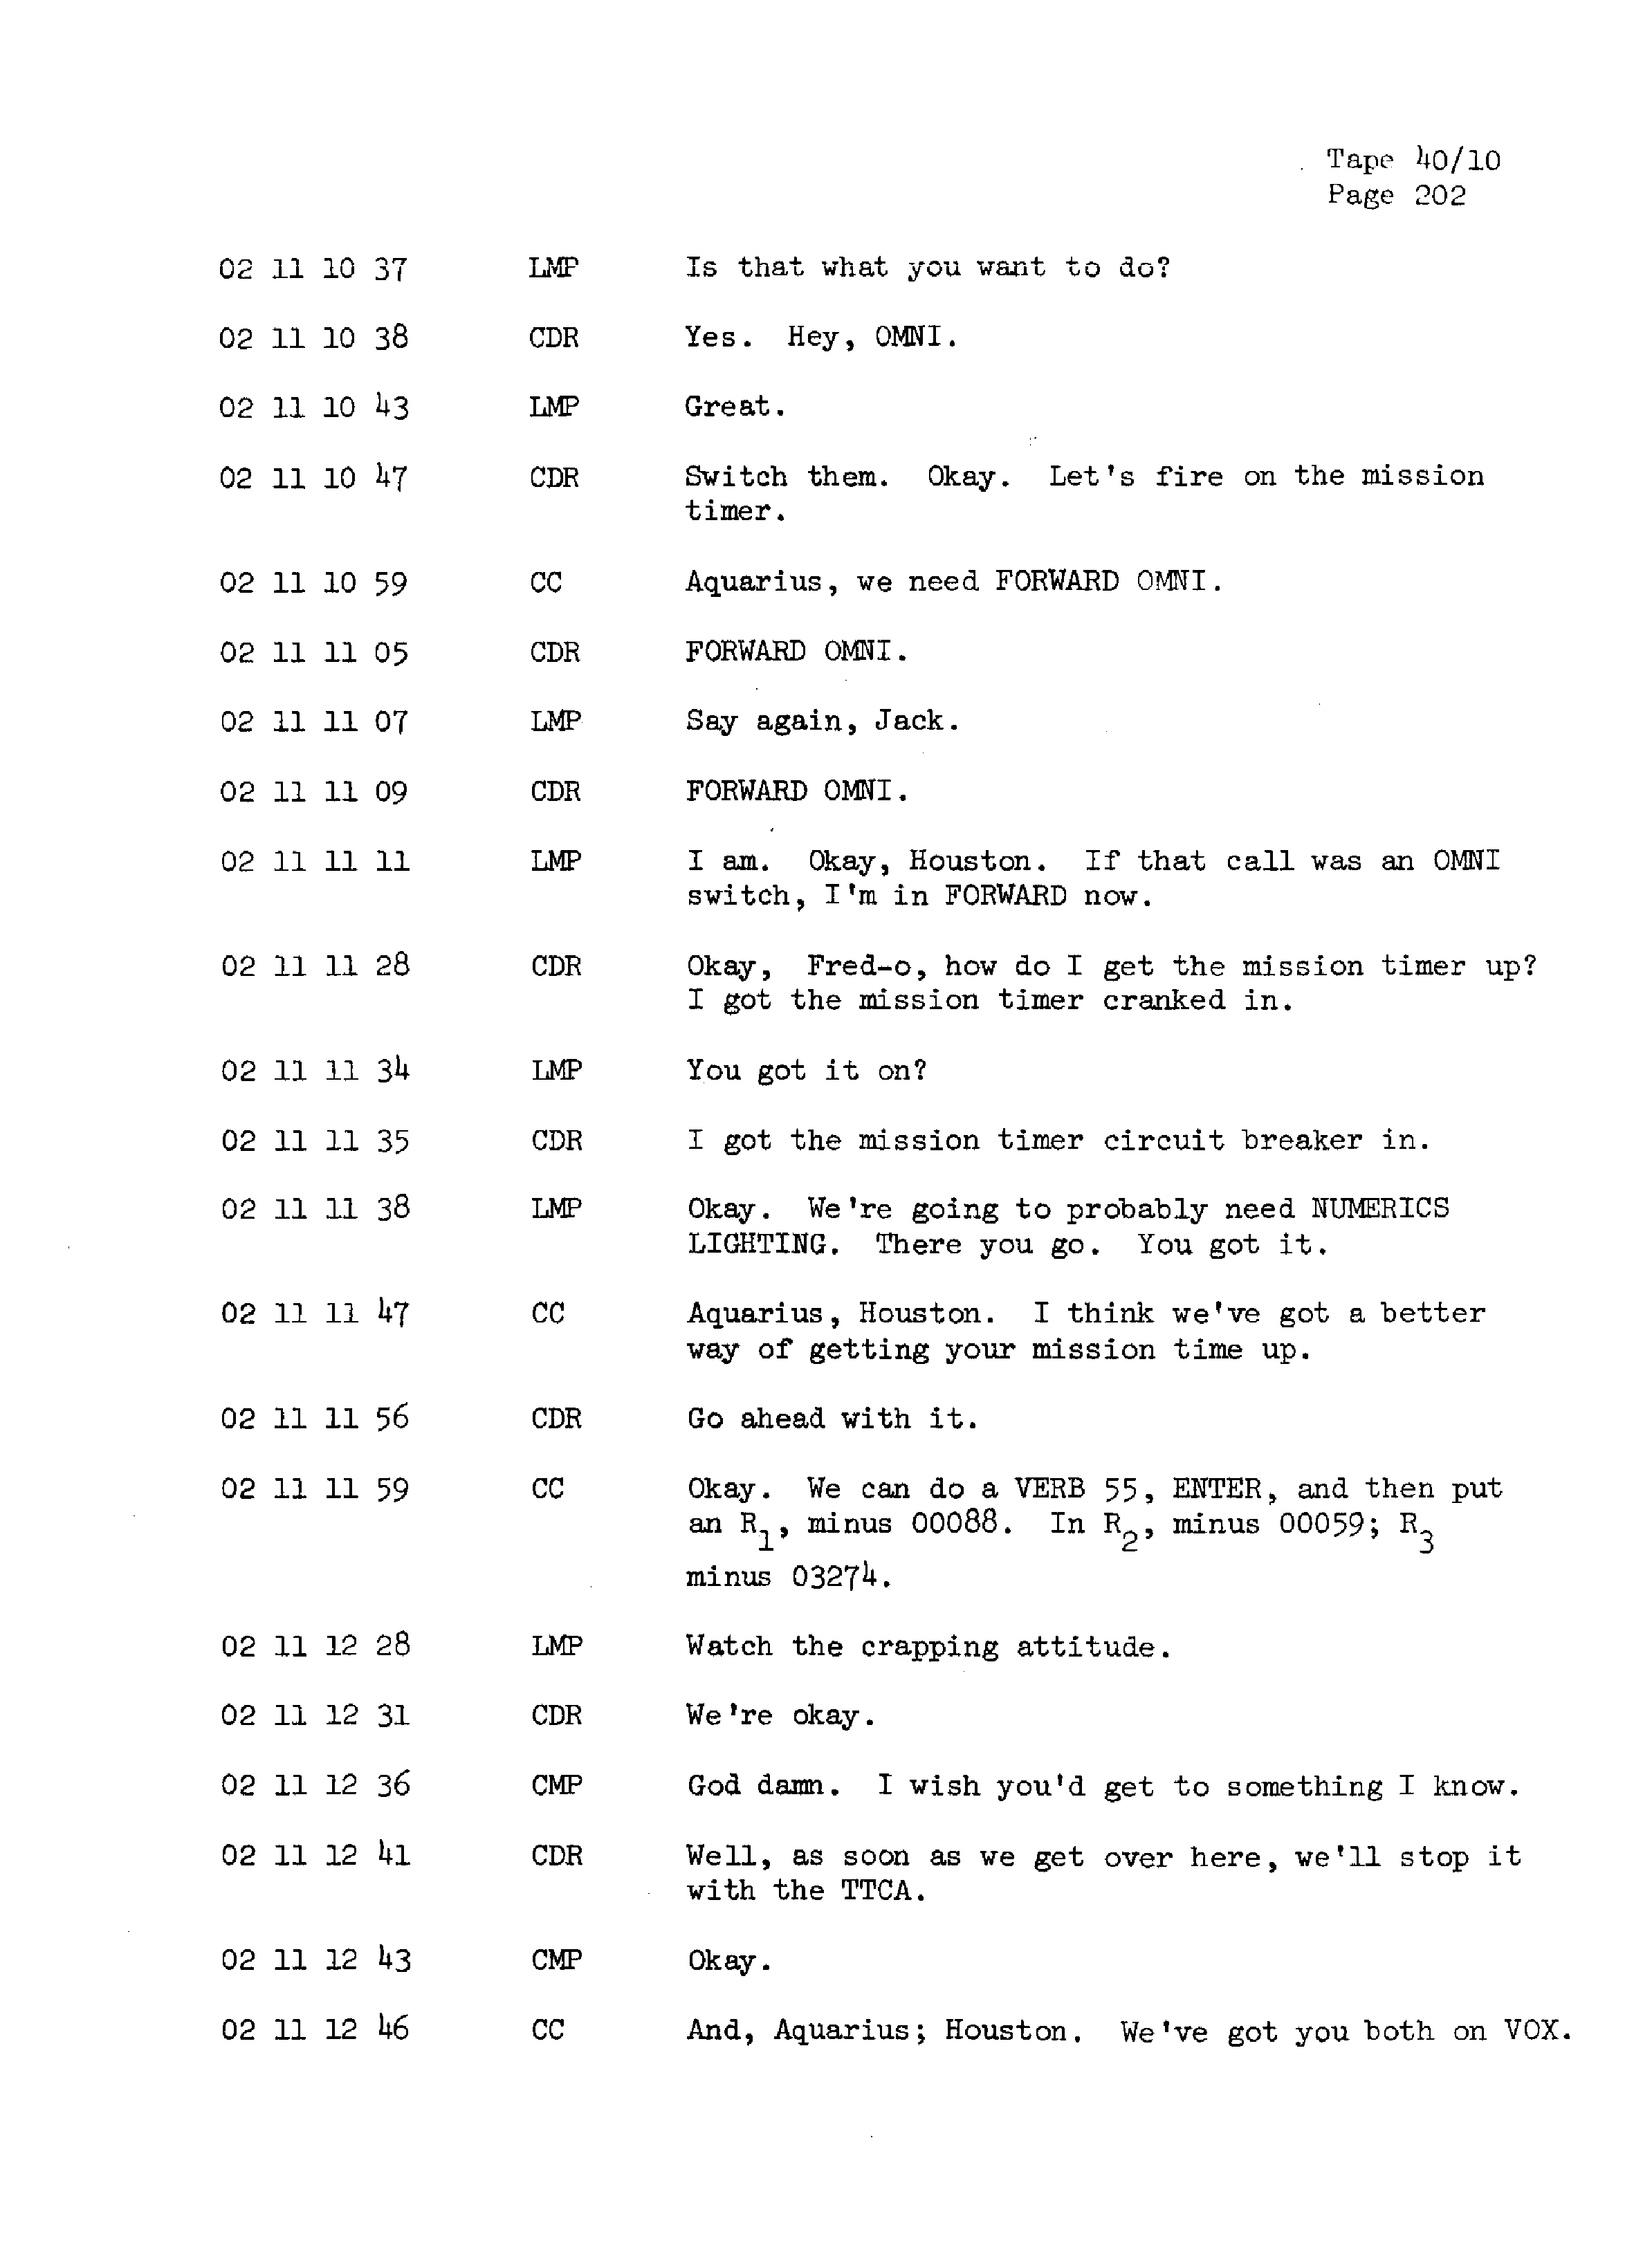 Page 209 of Apollo 13’s original transcript